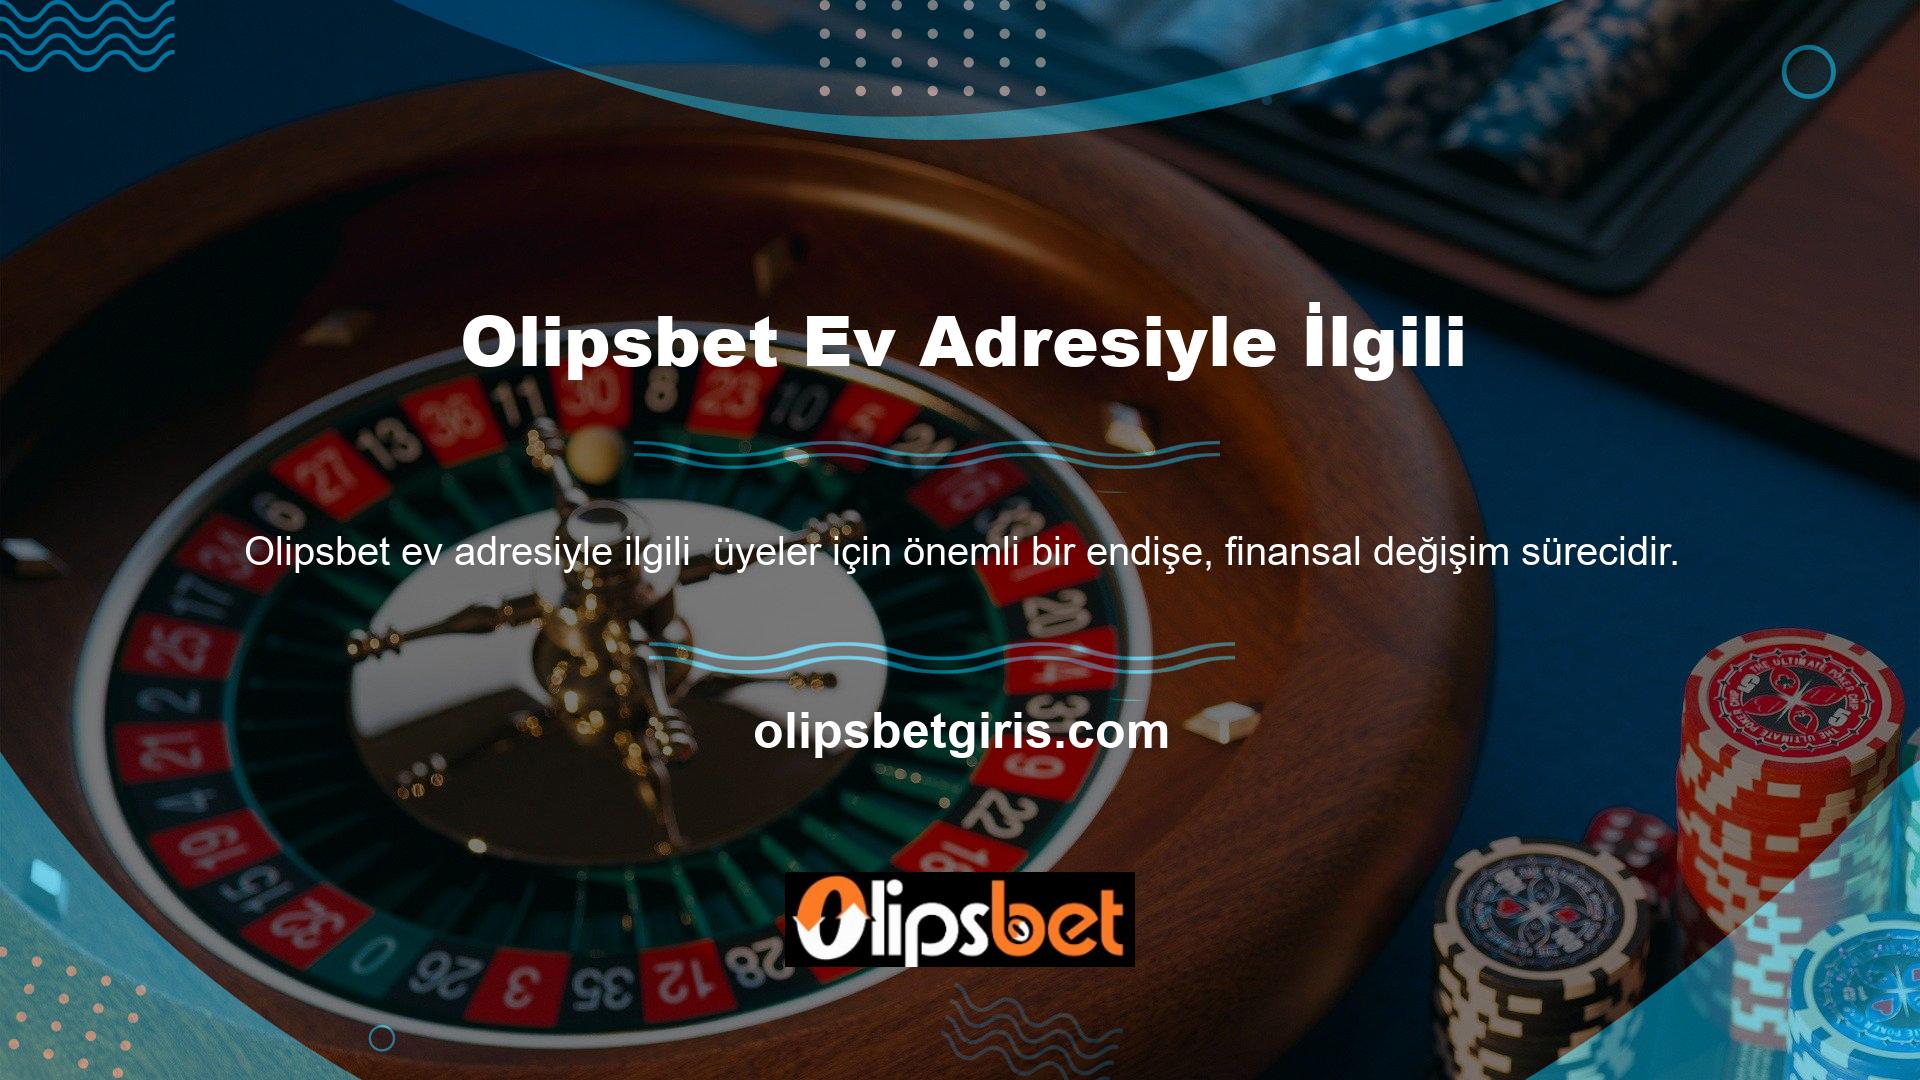 Olipsbet bahis sitesi hızlı ve güvenilir para yatırma ve çekme hizmetleriyle tanınmaktadır